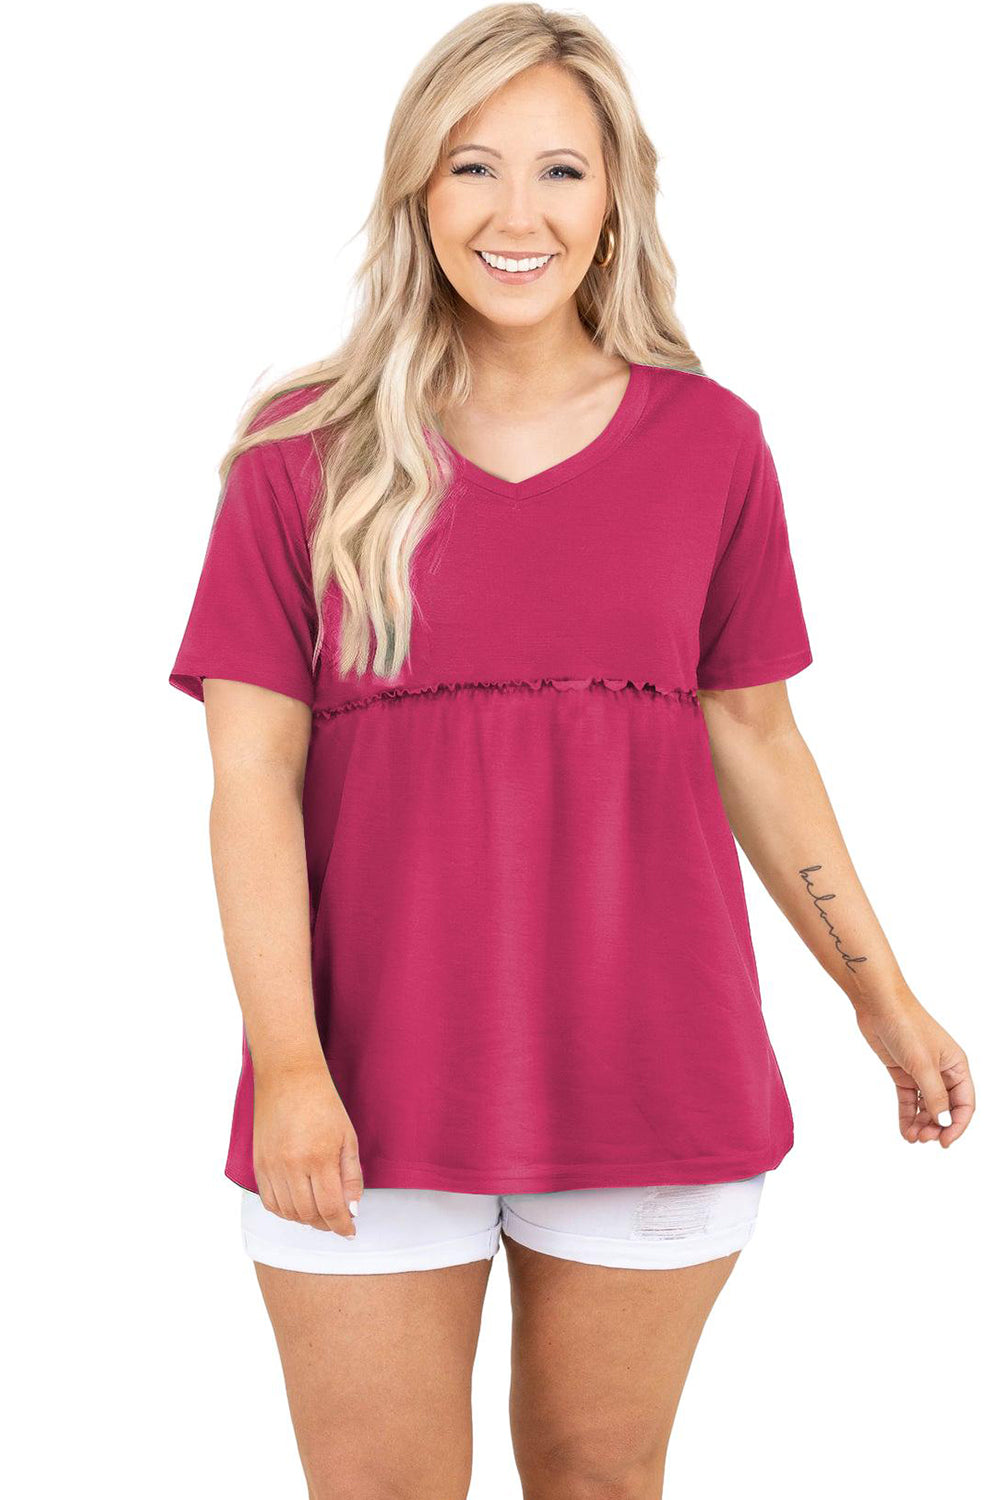 Ružičastocrvena jednobojna lepršava majica s kratkim rukavima veće veličine